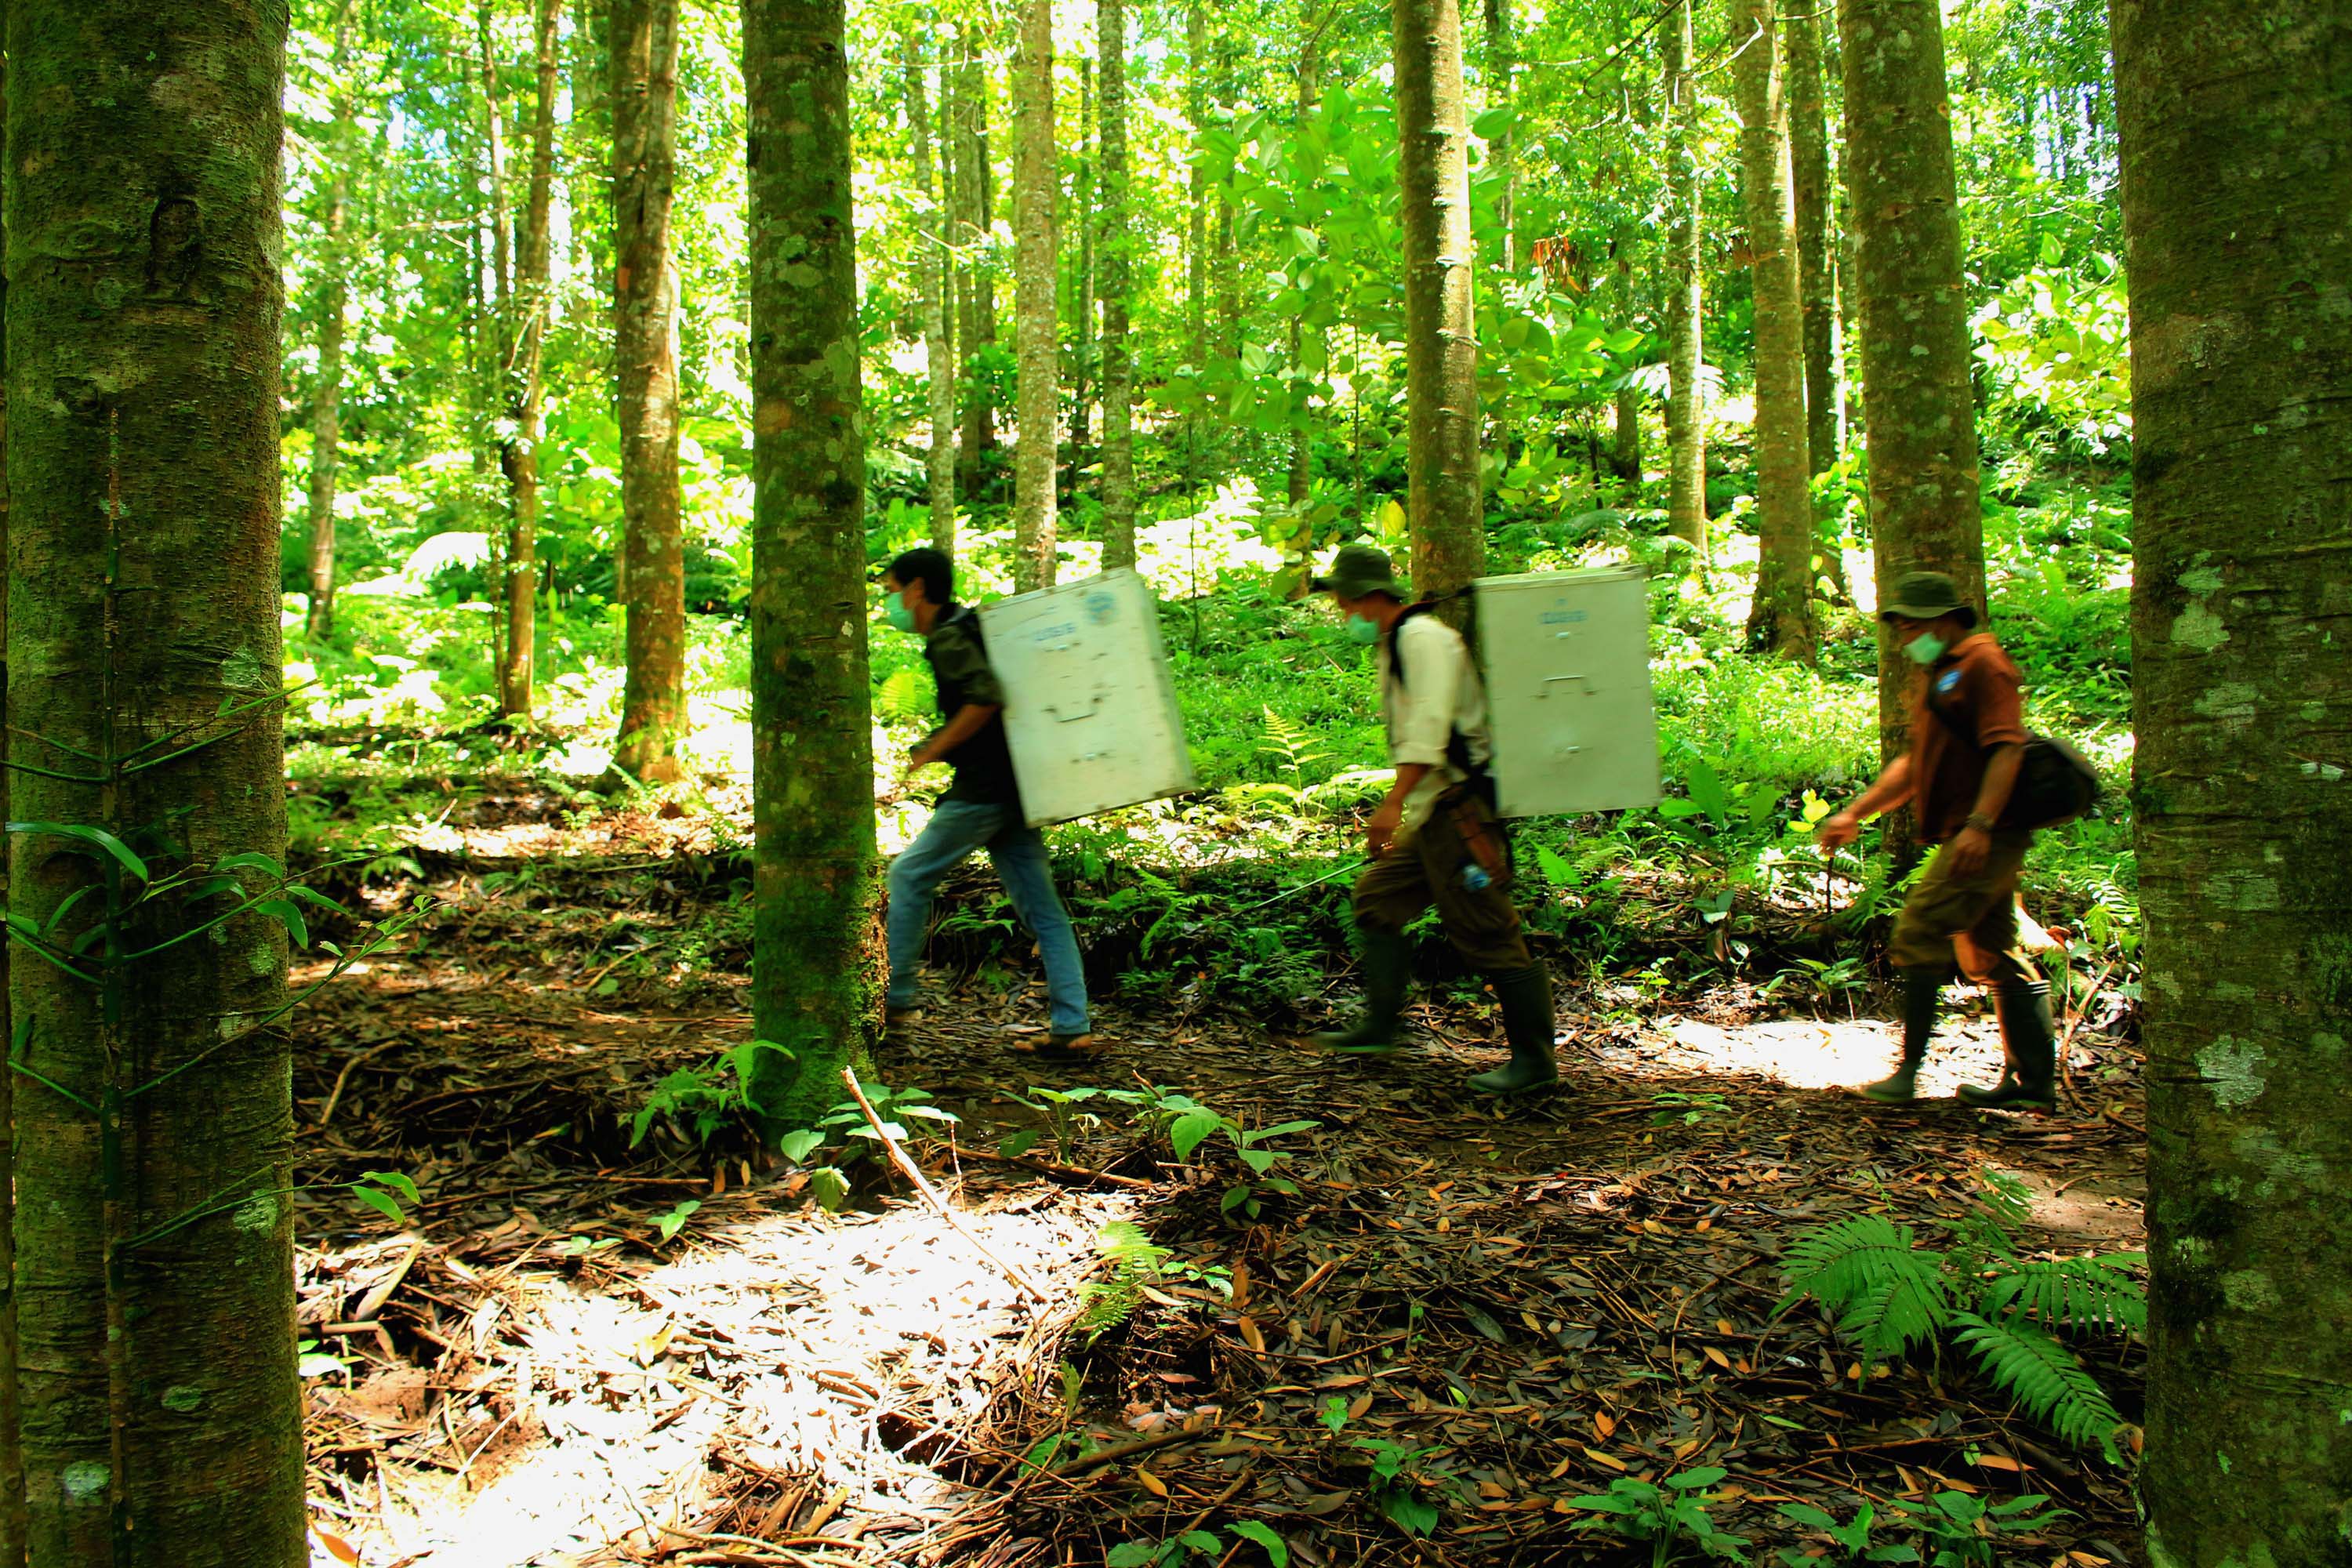 Sejumlah relawan membawa kukang jawa (Nycticebus javanicus) dengan menggunakan kandang transport yang nantinya akan dilepasliarkan di Taman Nasiona Gunung Halimun Salak (TNGHS). Foto Donny Iqbal